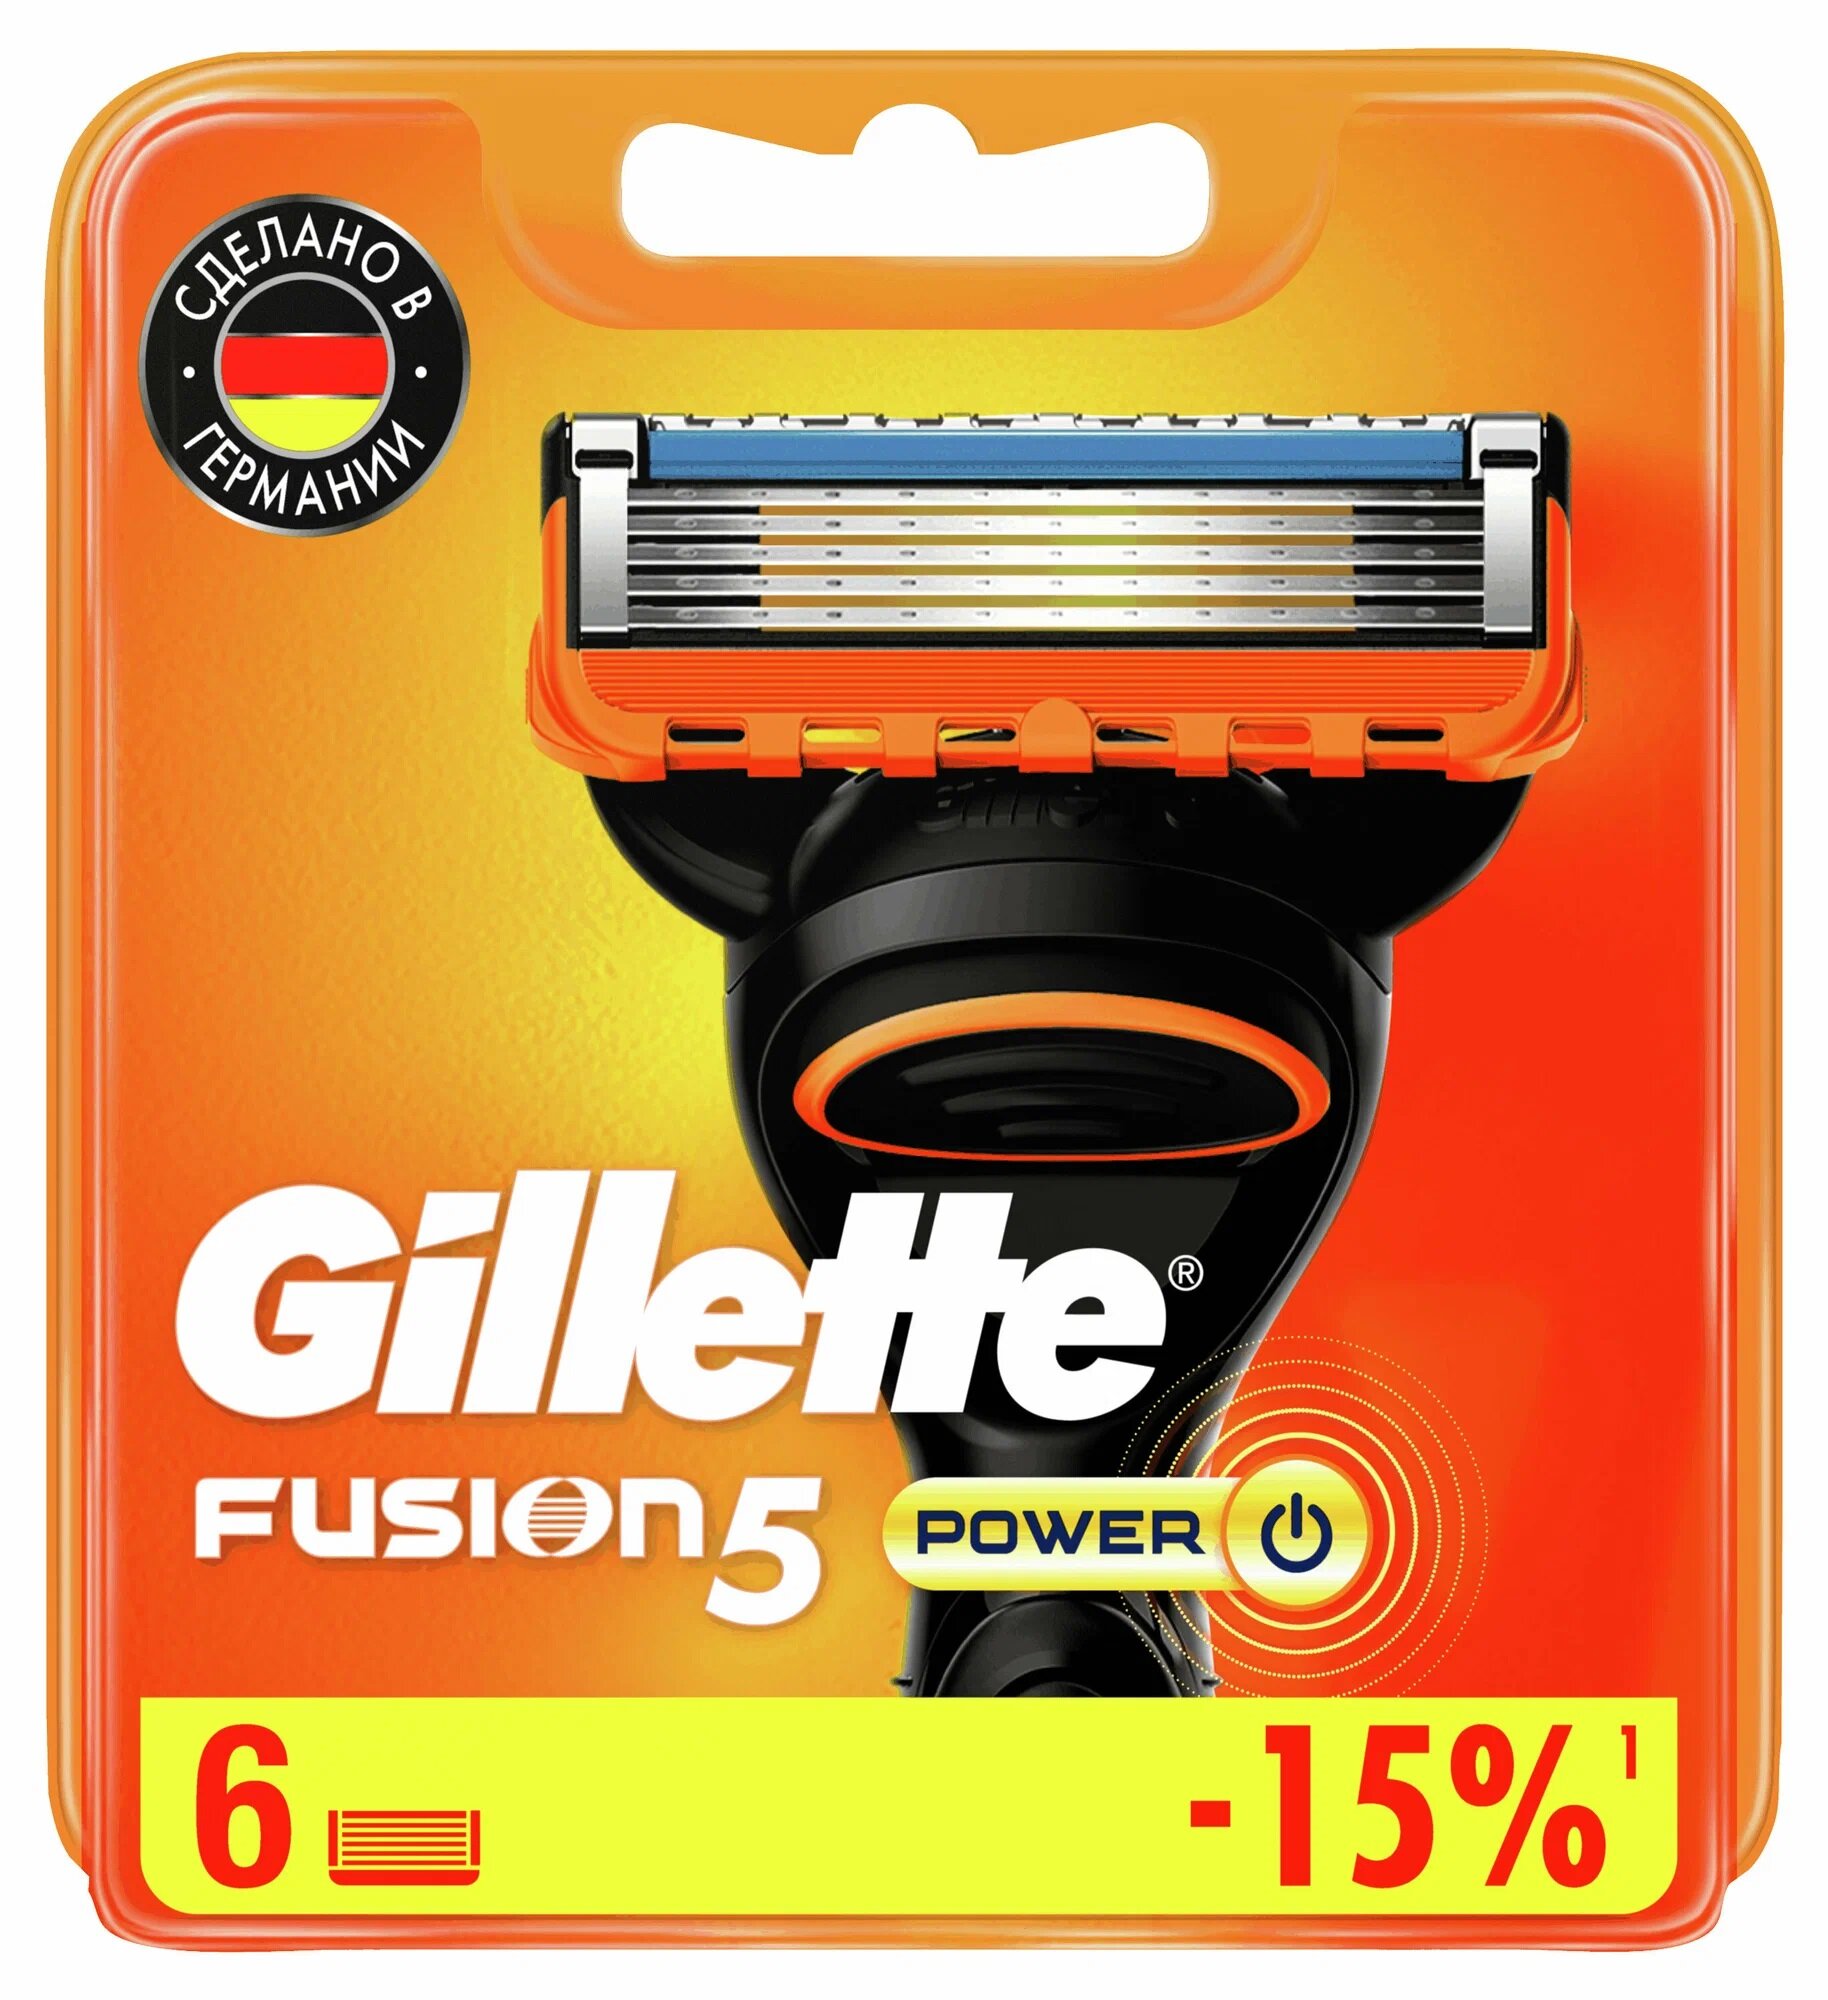 Сменные кассеты для станка Gillette FUSION5 POWER, 6 шт.